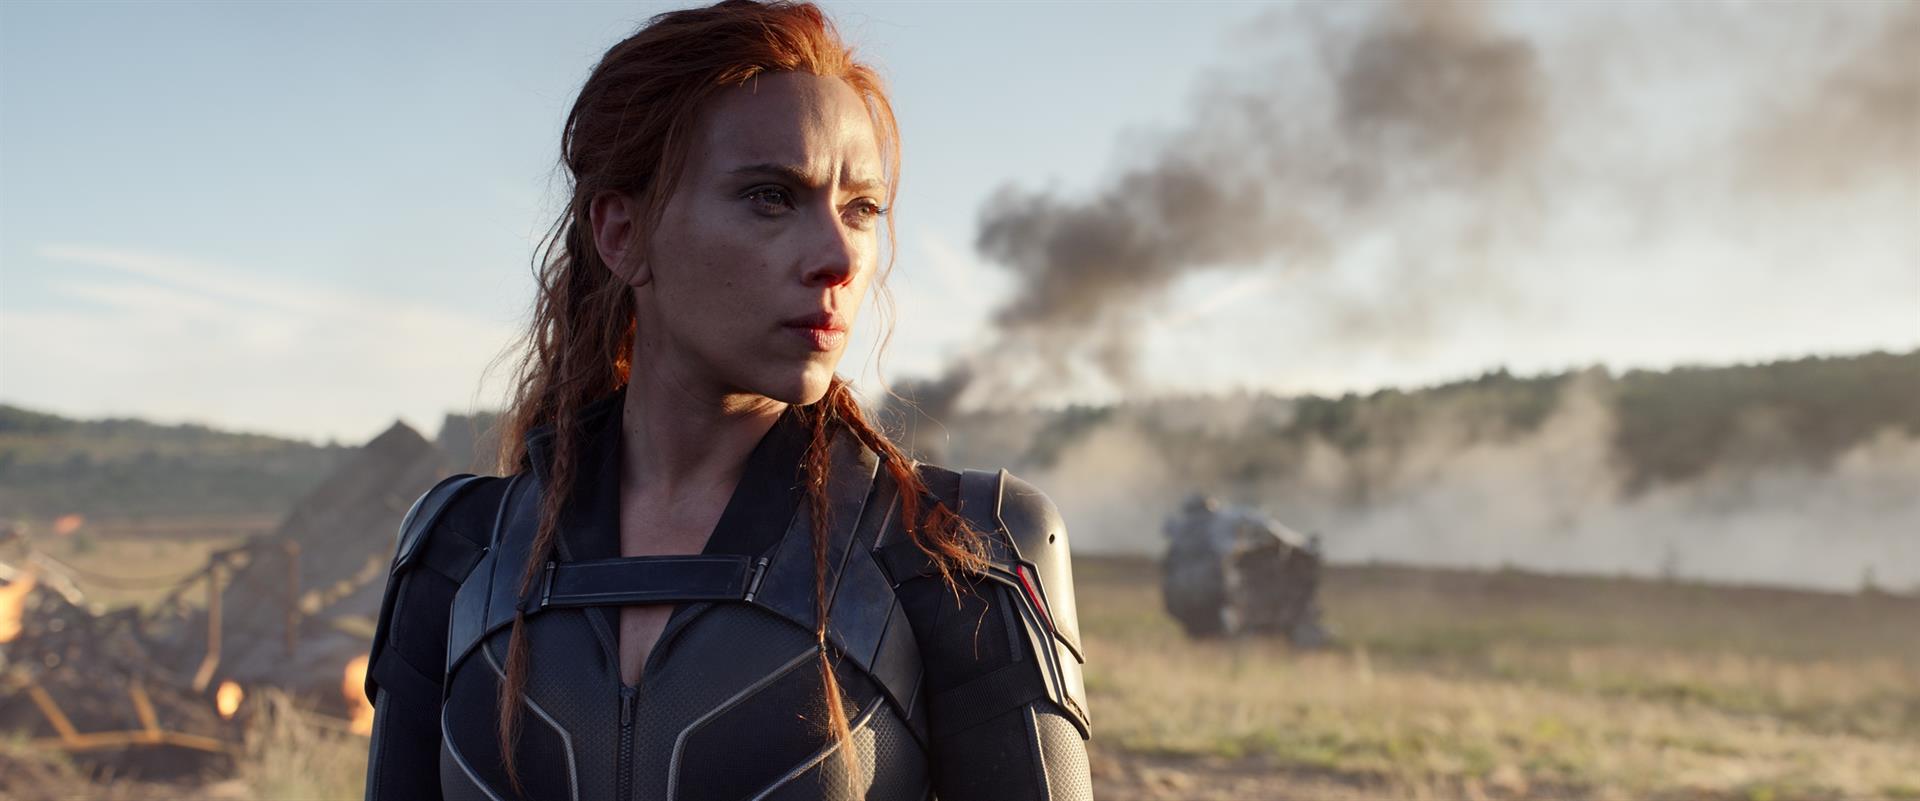 La estrella de "Black Widow", Scarlett Johansson demandaría a Disney por un "incumplimiento de contrato".